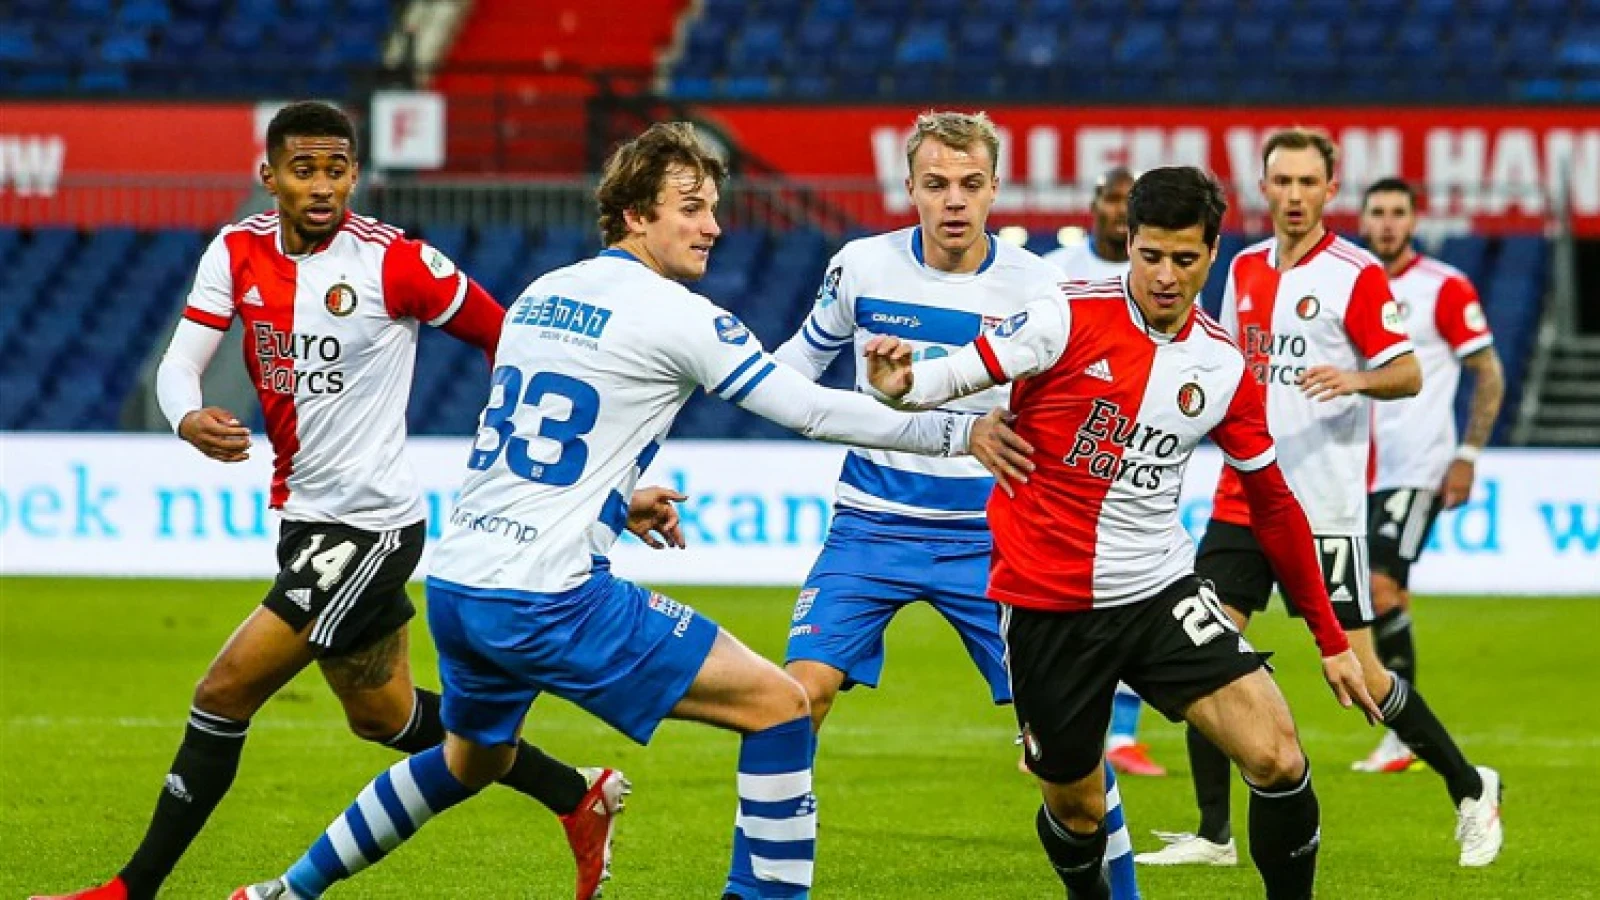 OFFICIEEL | Feyenoord bevestigt vertrek Teixeira naar Portugal